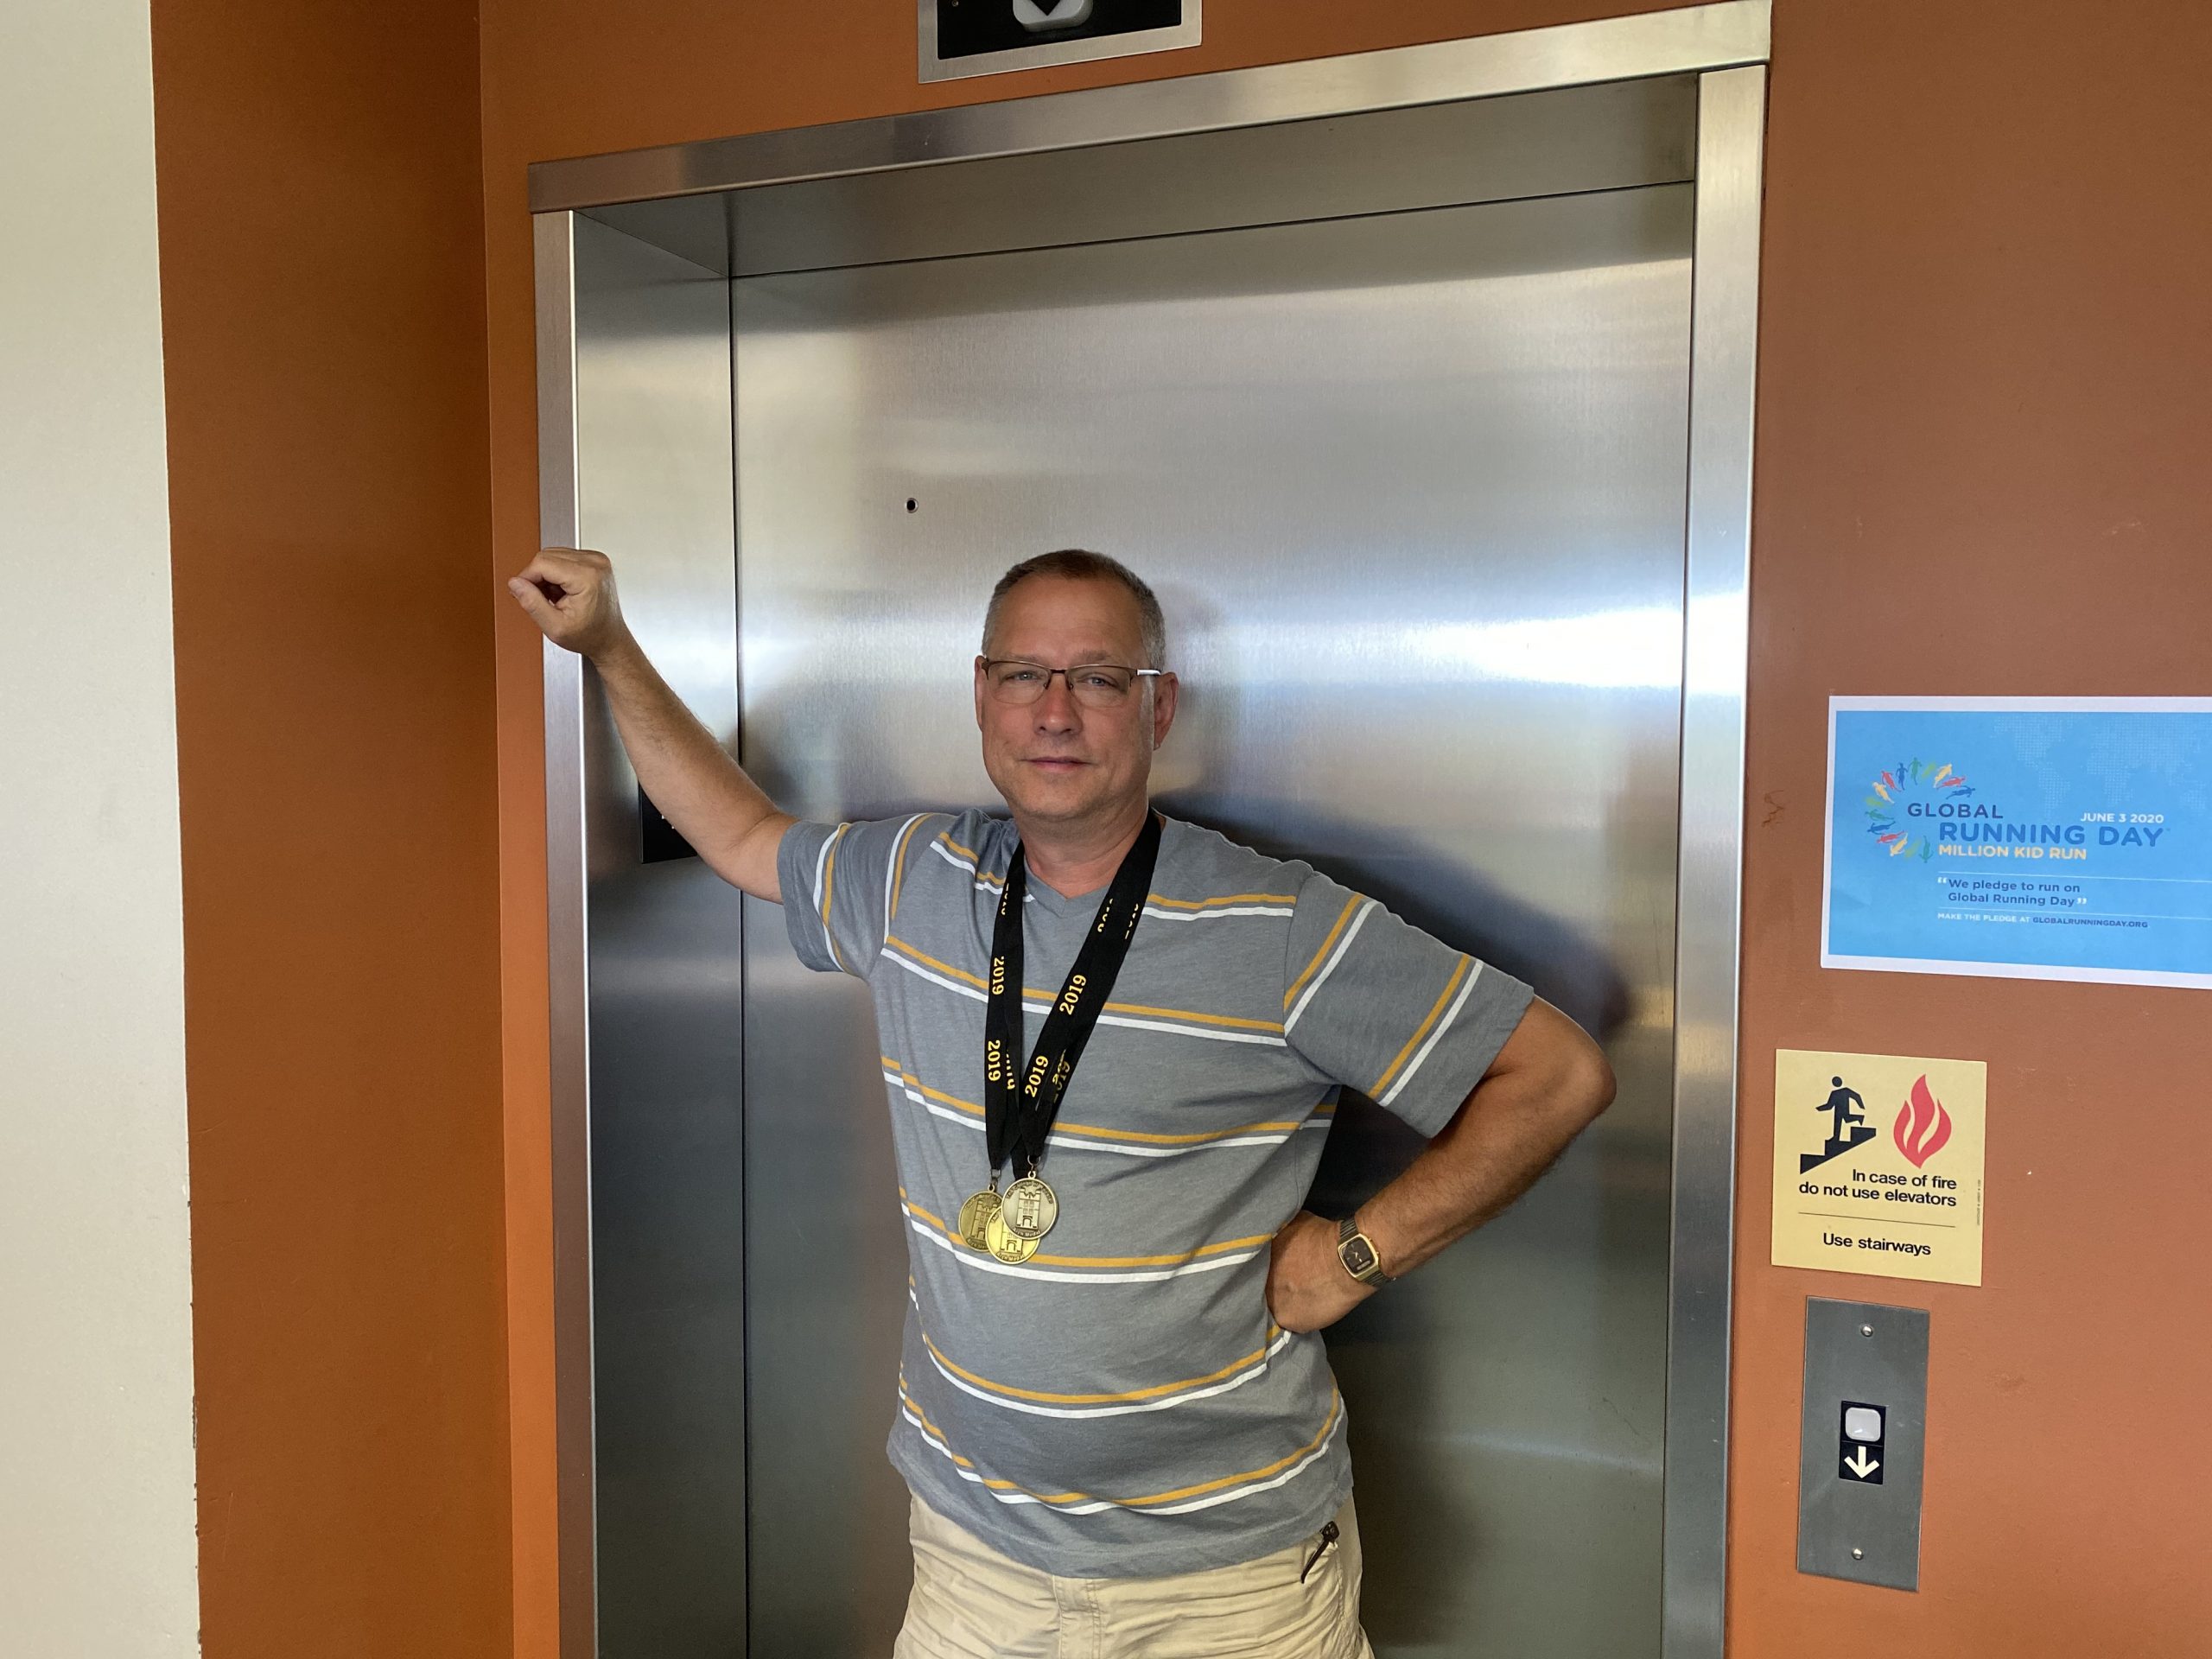 Image of Dan Krites in front of elevator doors